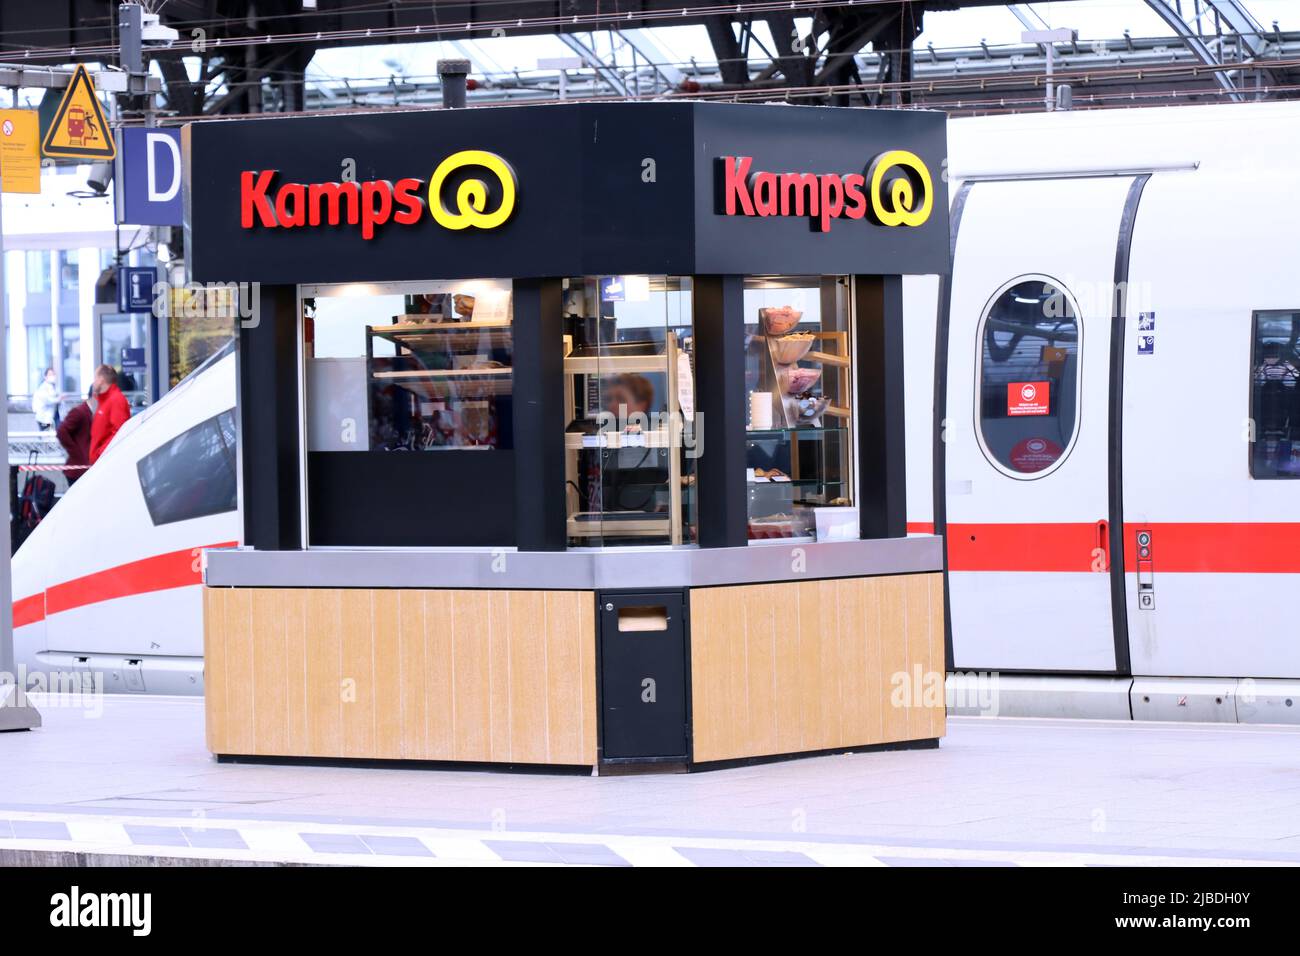 Verkaufsstand der Bäckerei-Kette Kamps GmbH auf einem Bahnsteig des kölner Hauptbahnhofs, Nordrhein-Westfalen, Deutschland, Köln Stock Photo